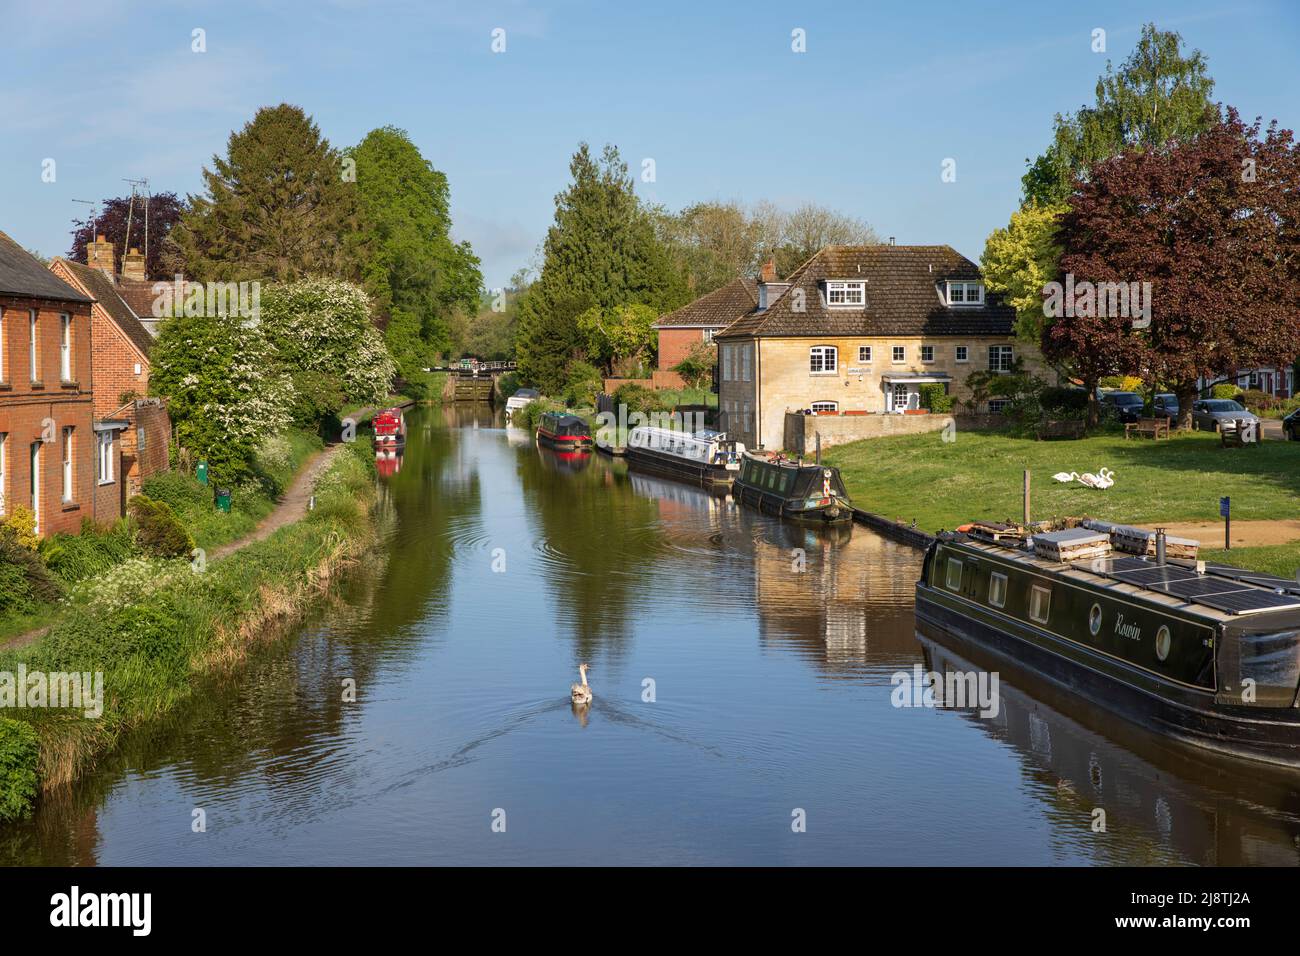 Vista a lo largo del canal Kennett y Avon mirando hacia el oeste, Hungerford, West Berkshire, Inglaterra, Reino Unido, Europa Foto de stock